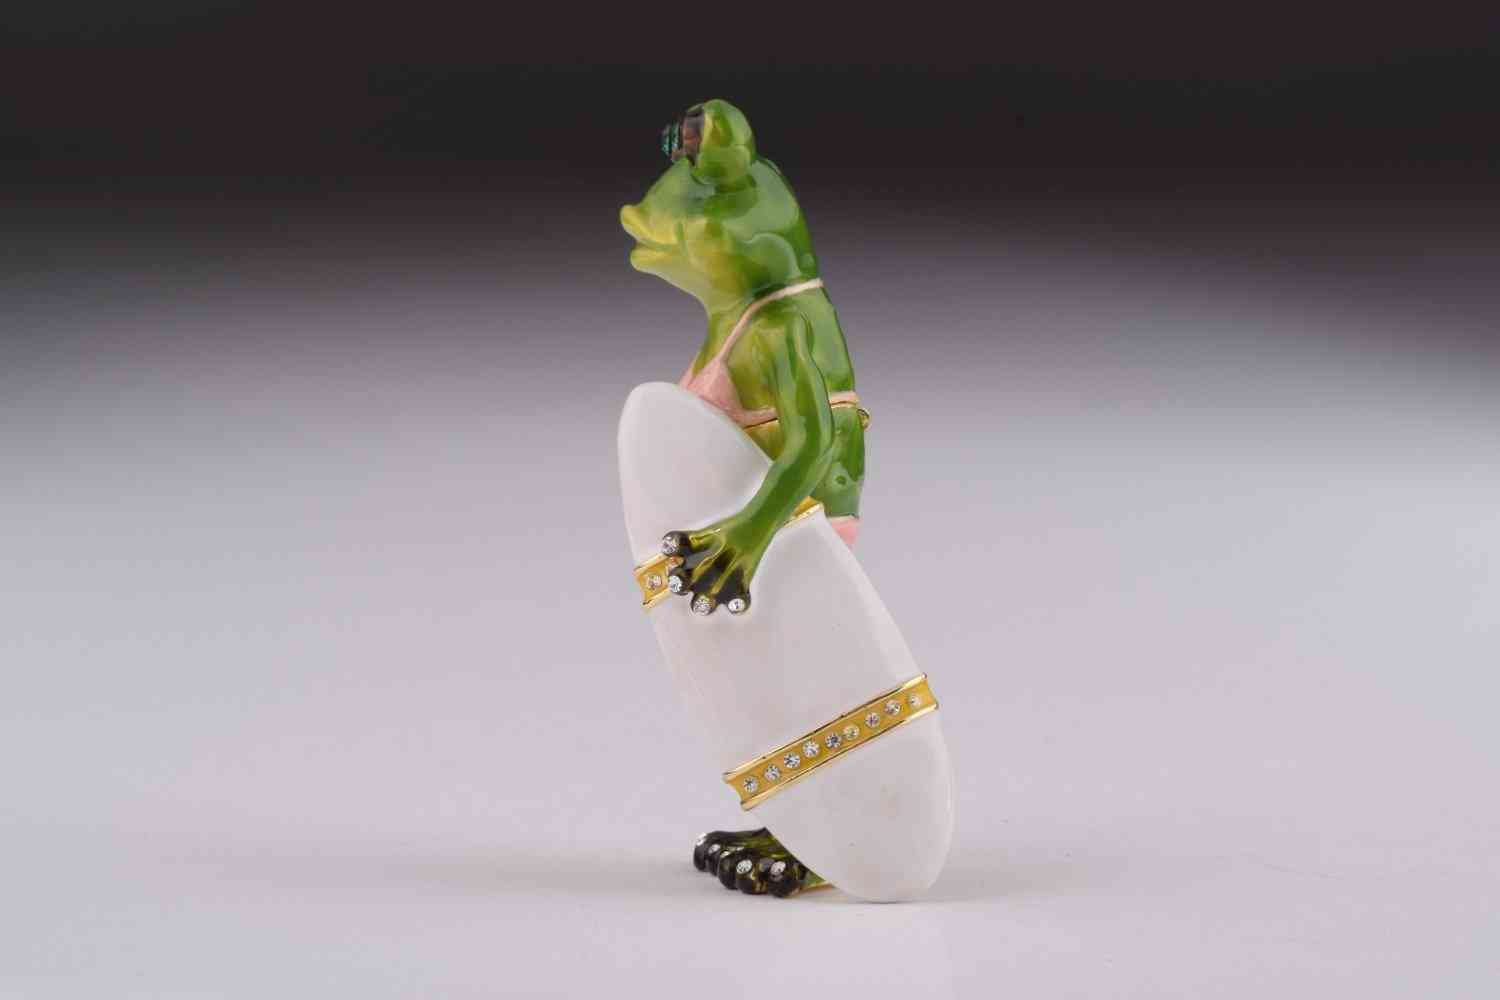 żaba trzyma pudełko bibelotów deski surfingowej